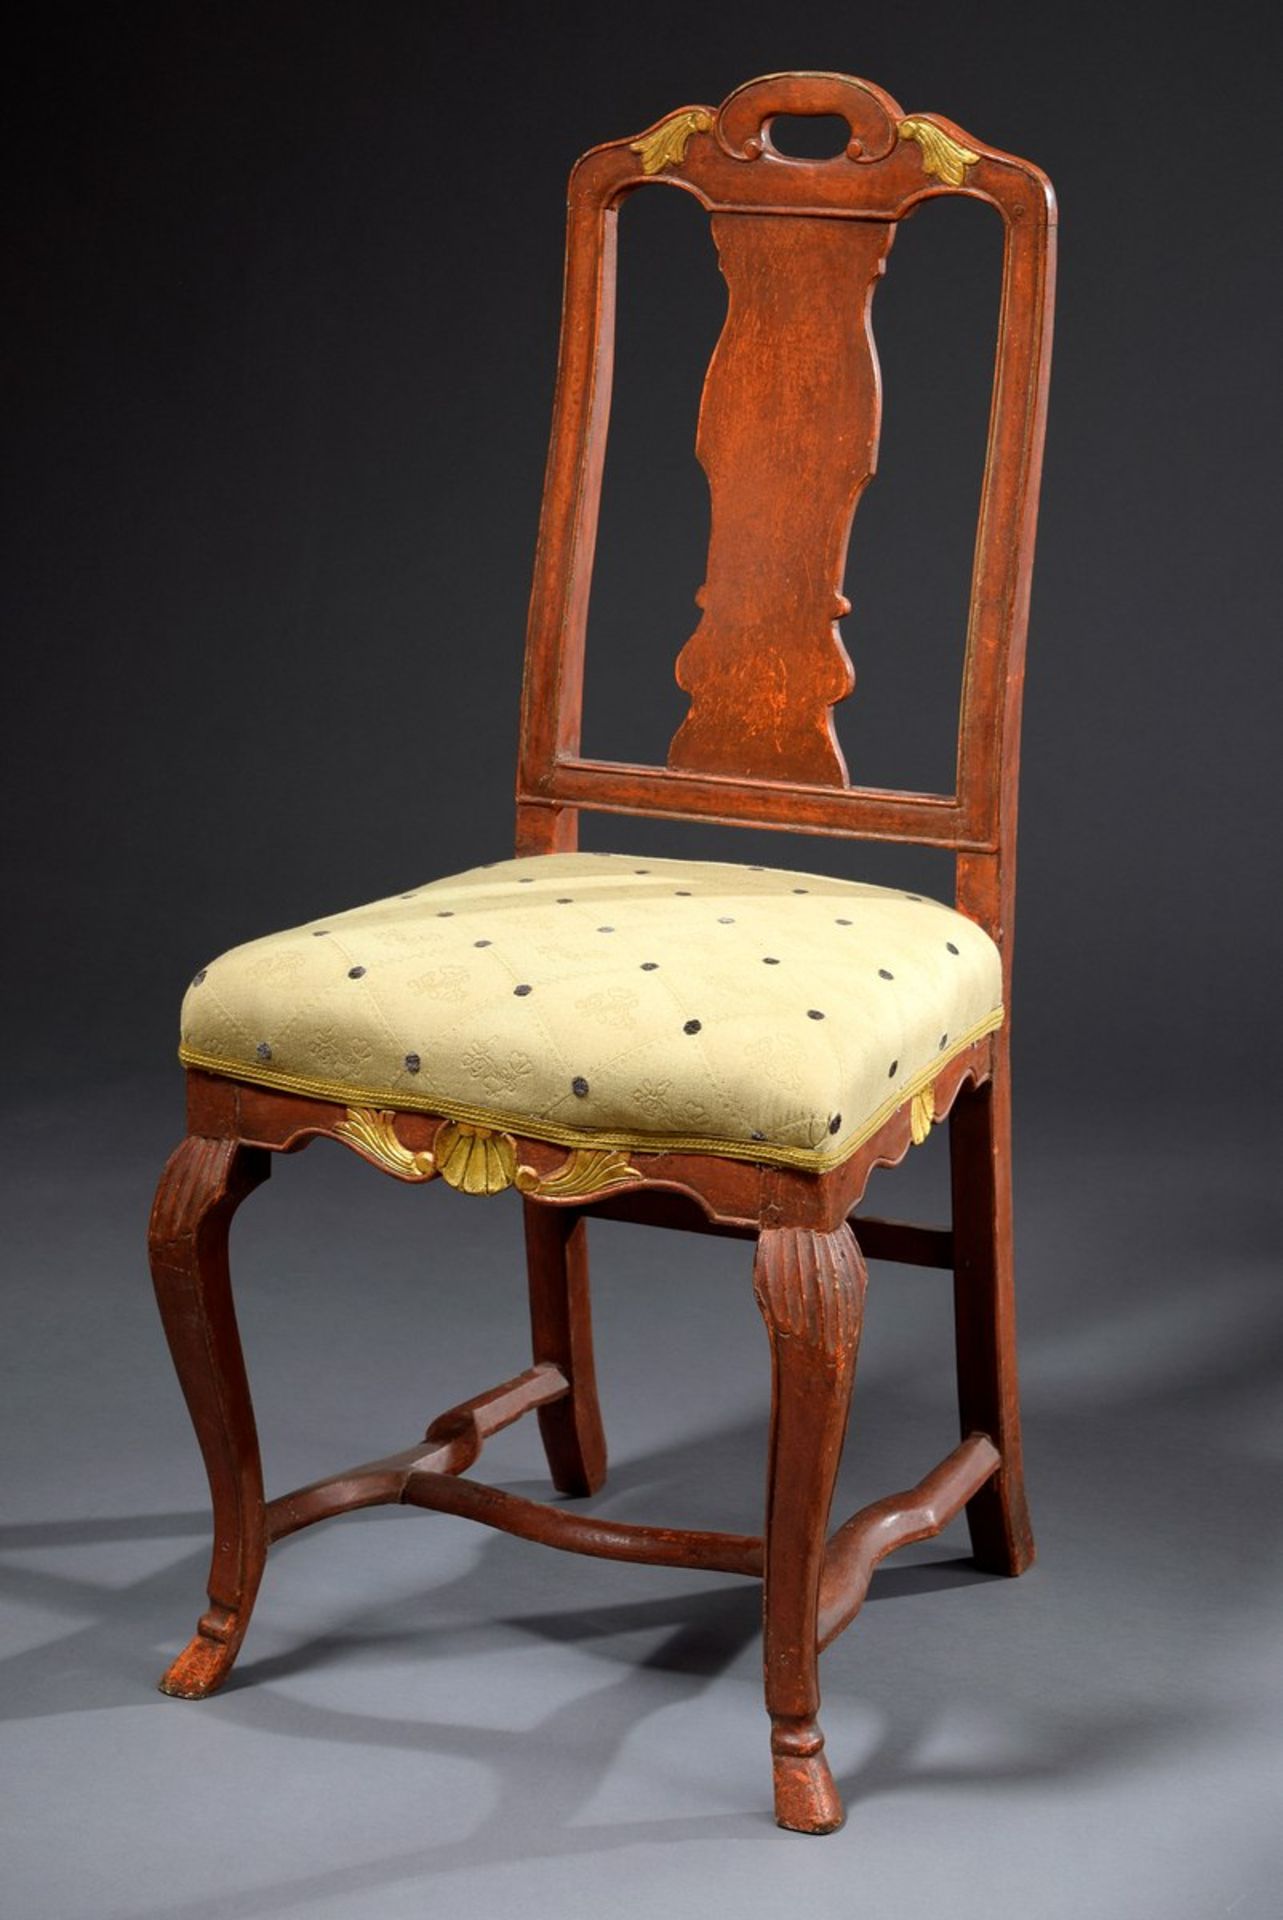 3 Stühle in barocker Façon mit etwas variierenden vergoldeten Elementen und beige schwarz - Bild 2 aus 8